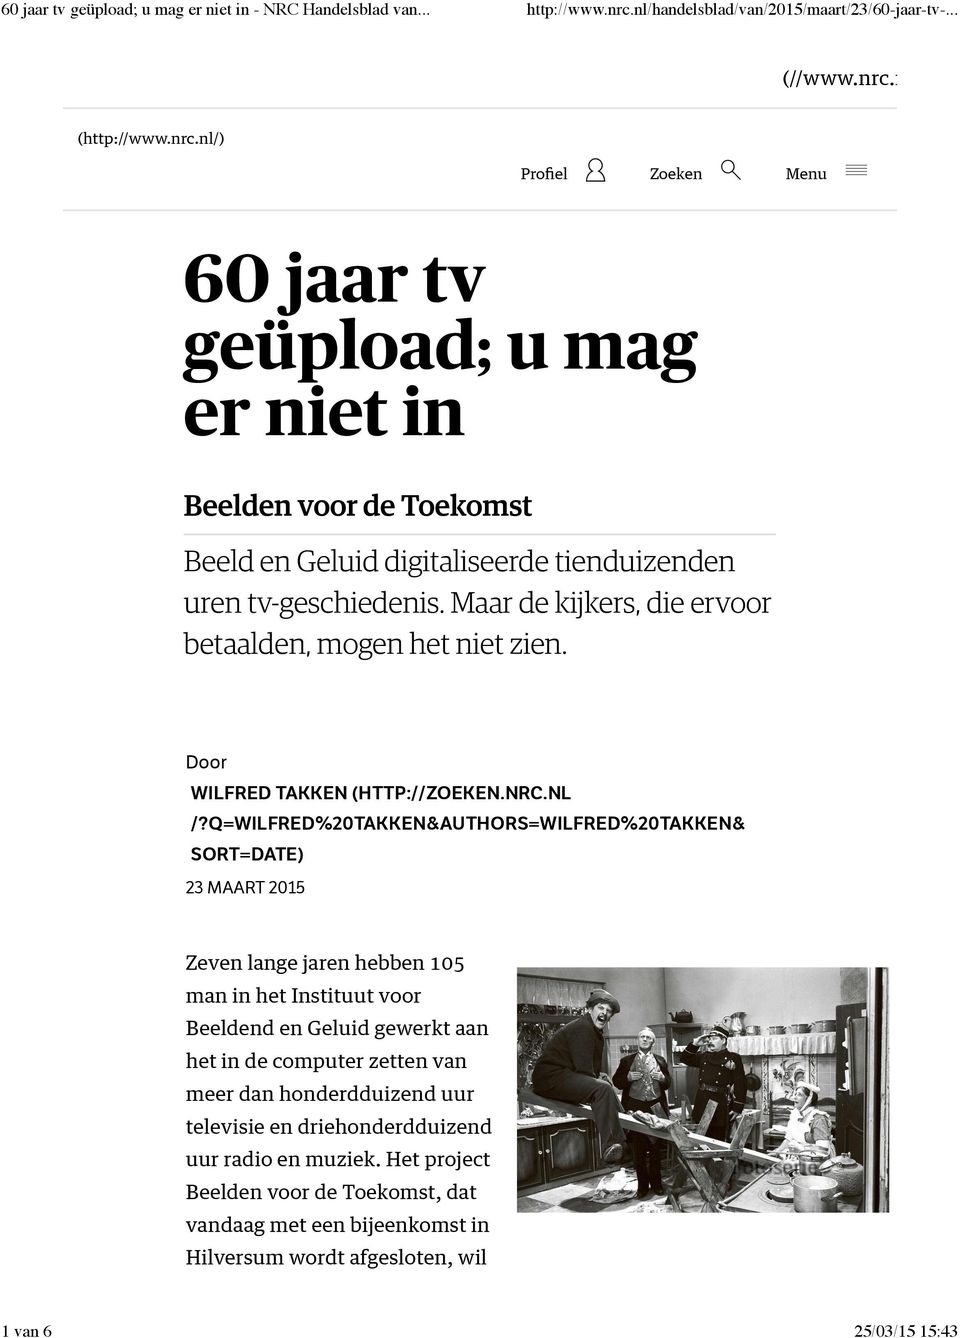 nl (http://www.nrc.nl/) Proﬁel Zoeken Menu 60 jaar tv geüpload; u mag er niet in Beelden voor de Toekomst Beeld en Geluid digitaliseerde tienduizenden uren tv-geschiedenis.